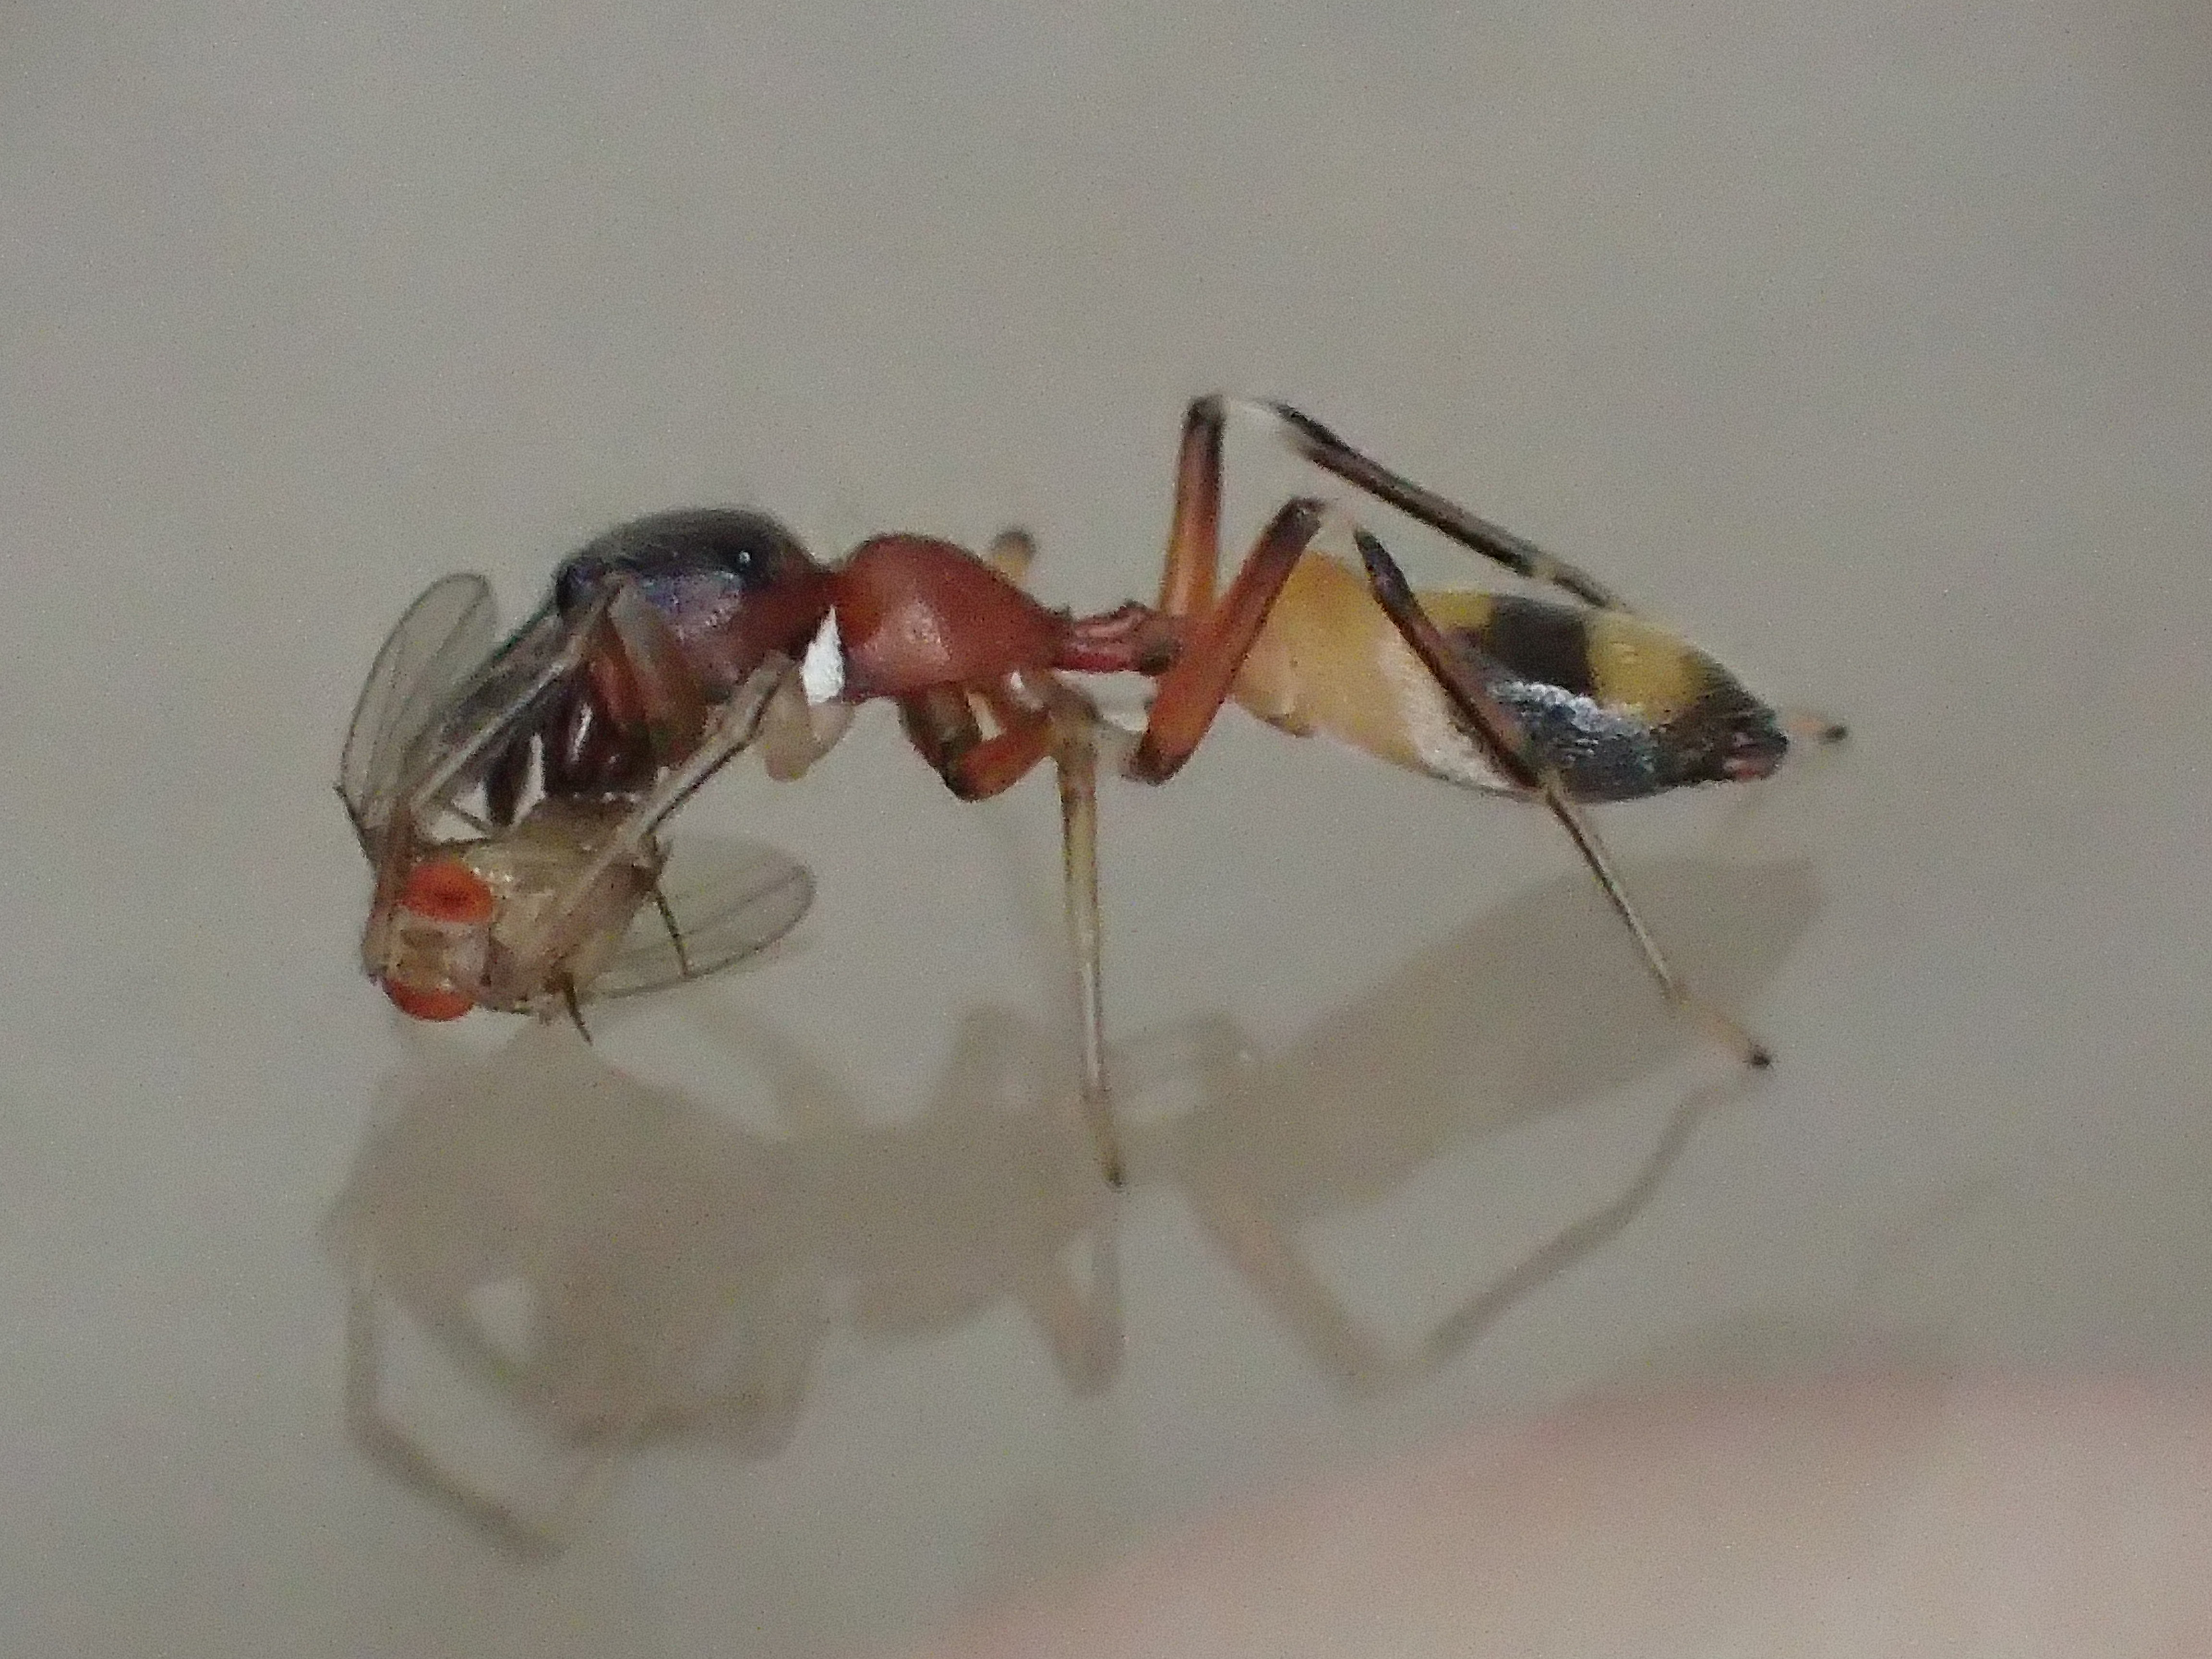 アリグモはアリを食べる 糸を吐く 赤い蟻アシナガキアリとどうやって餌を捕らえる を調べた画像と動画